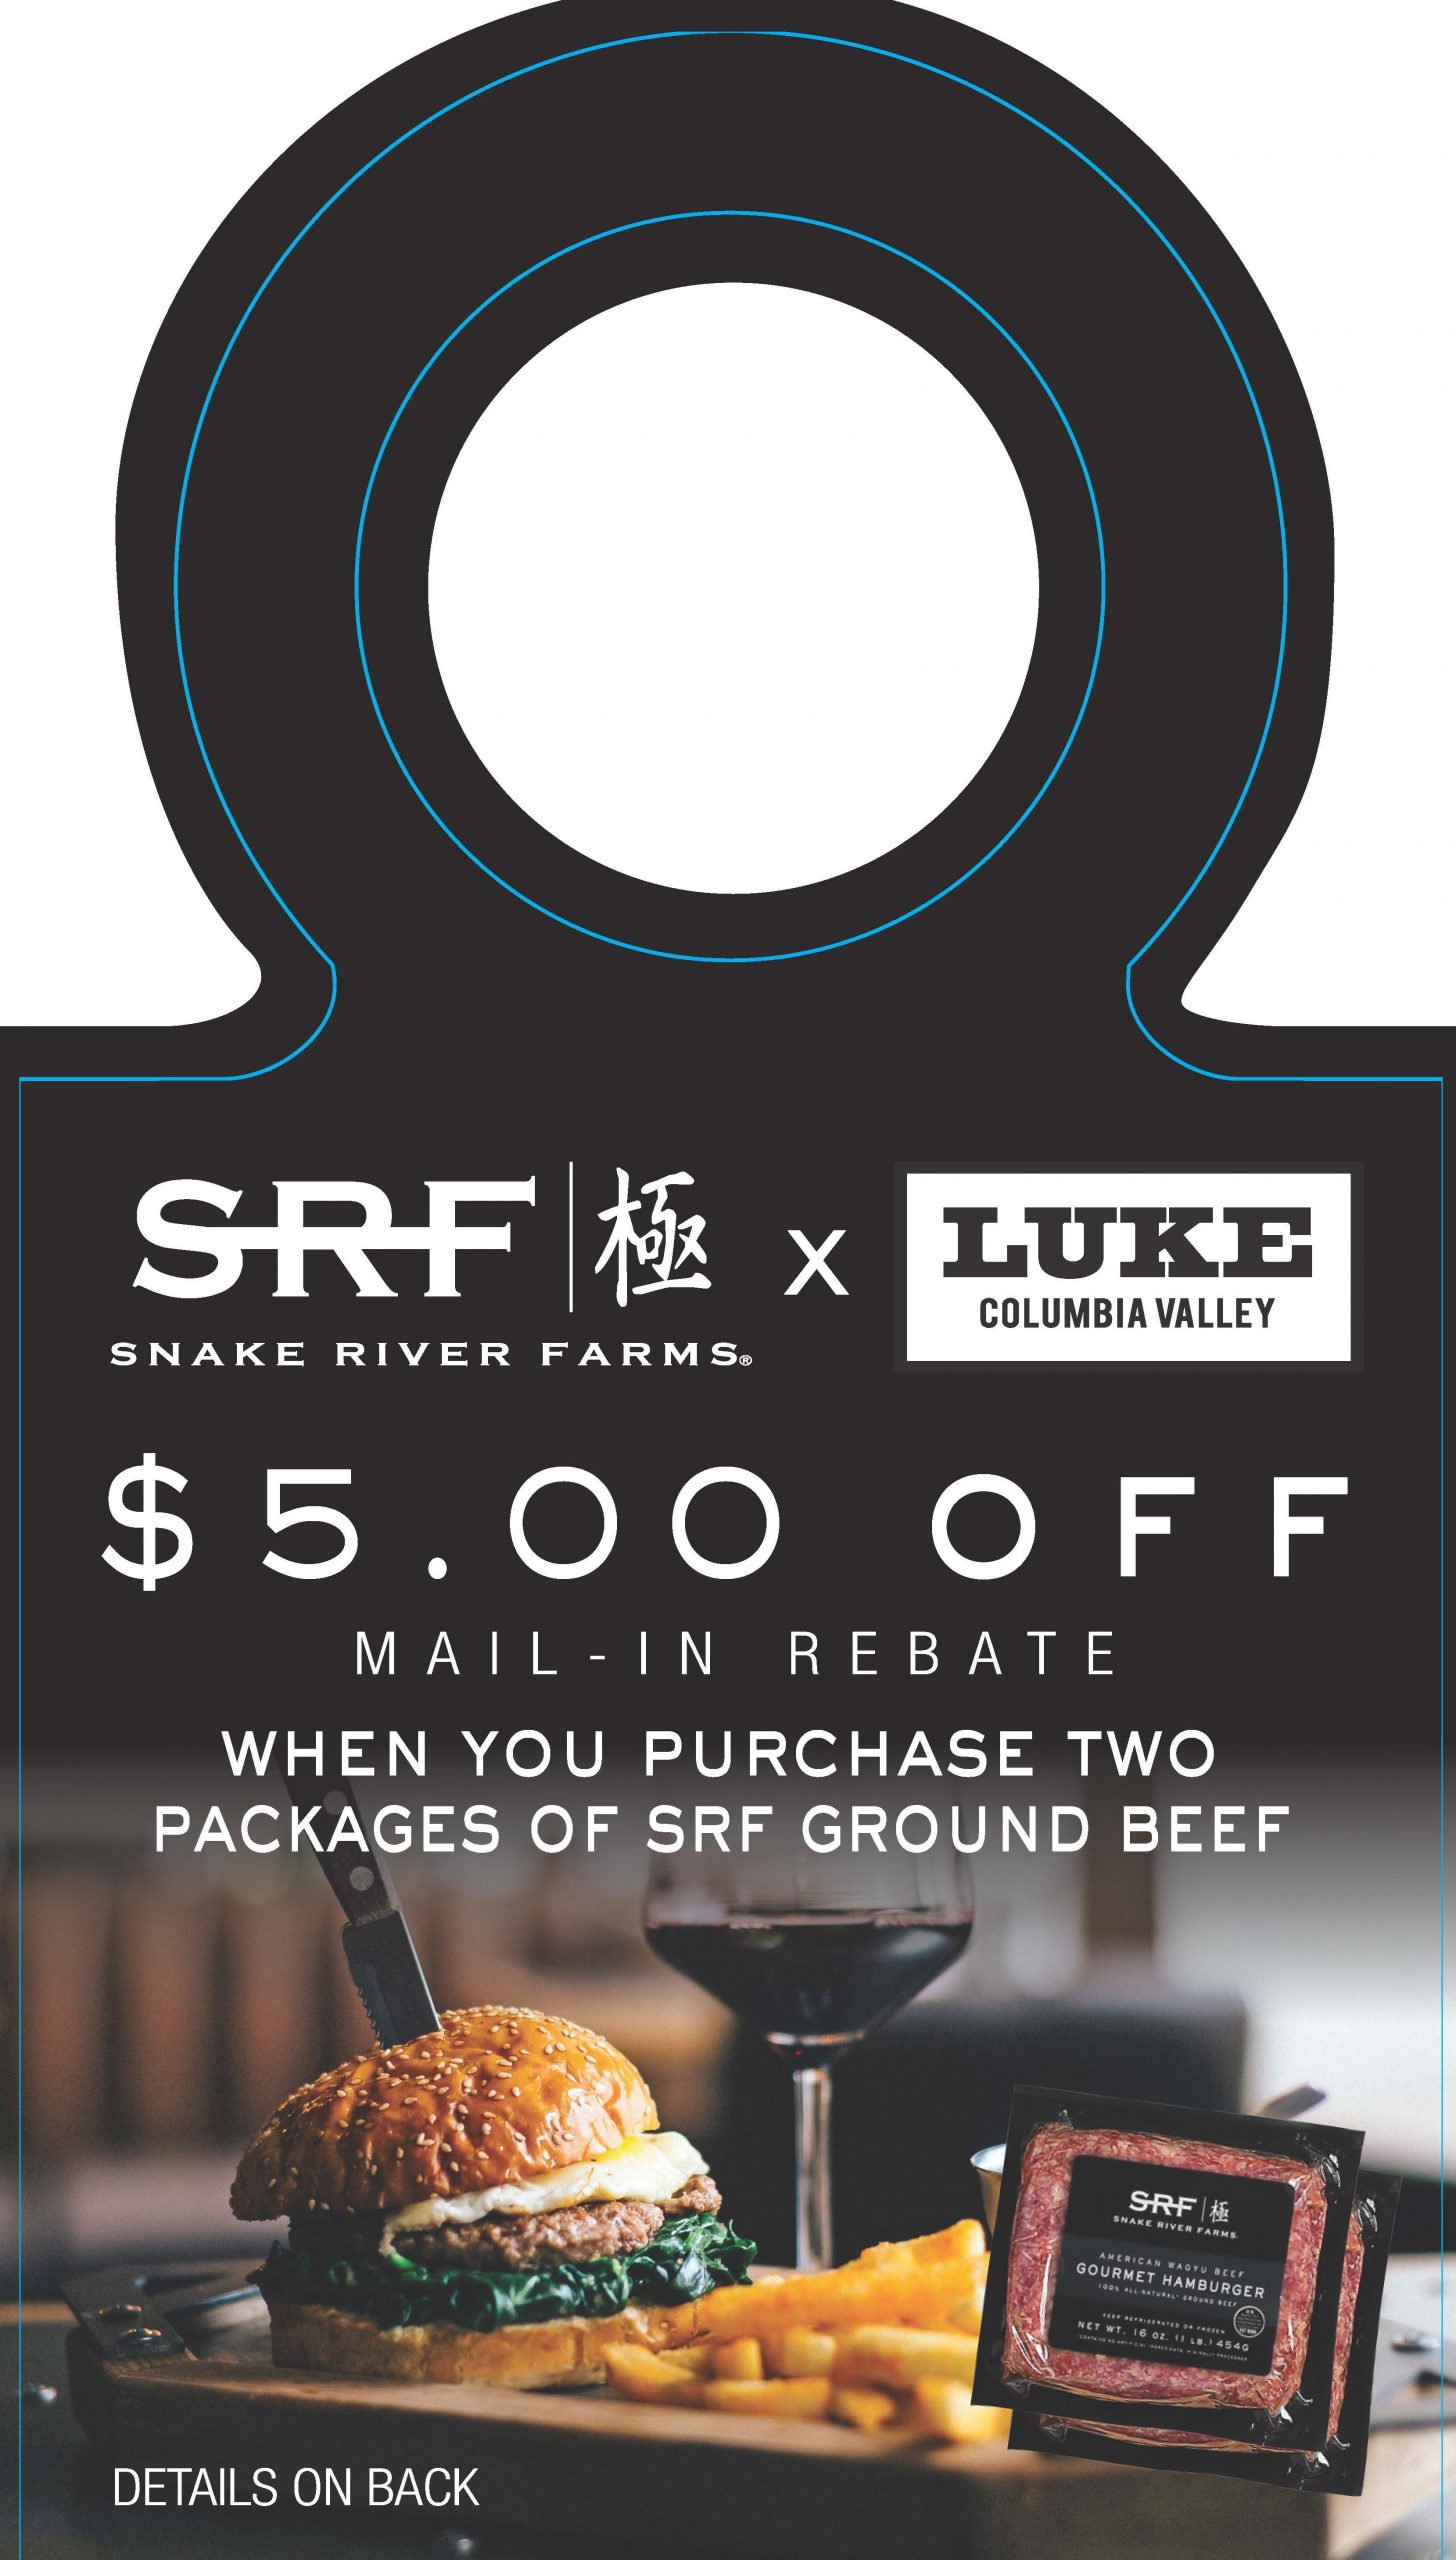 Luke & Snake River Farms $5 MIR on ONLY SRF Meat (May-Sept 2022)